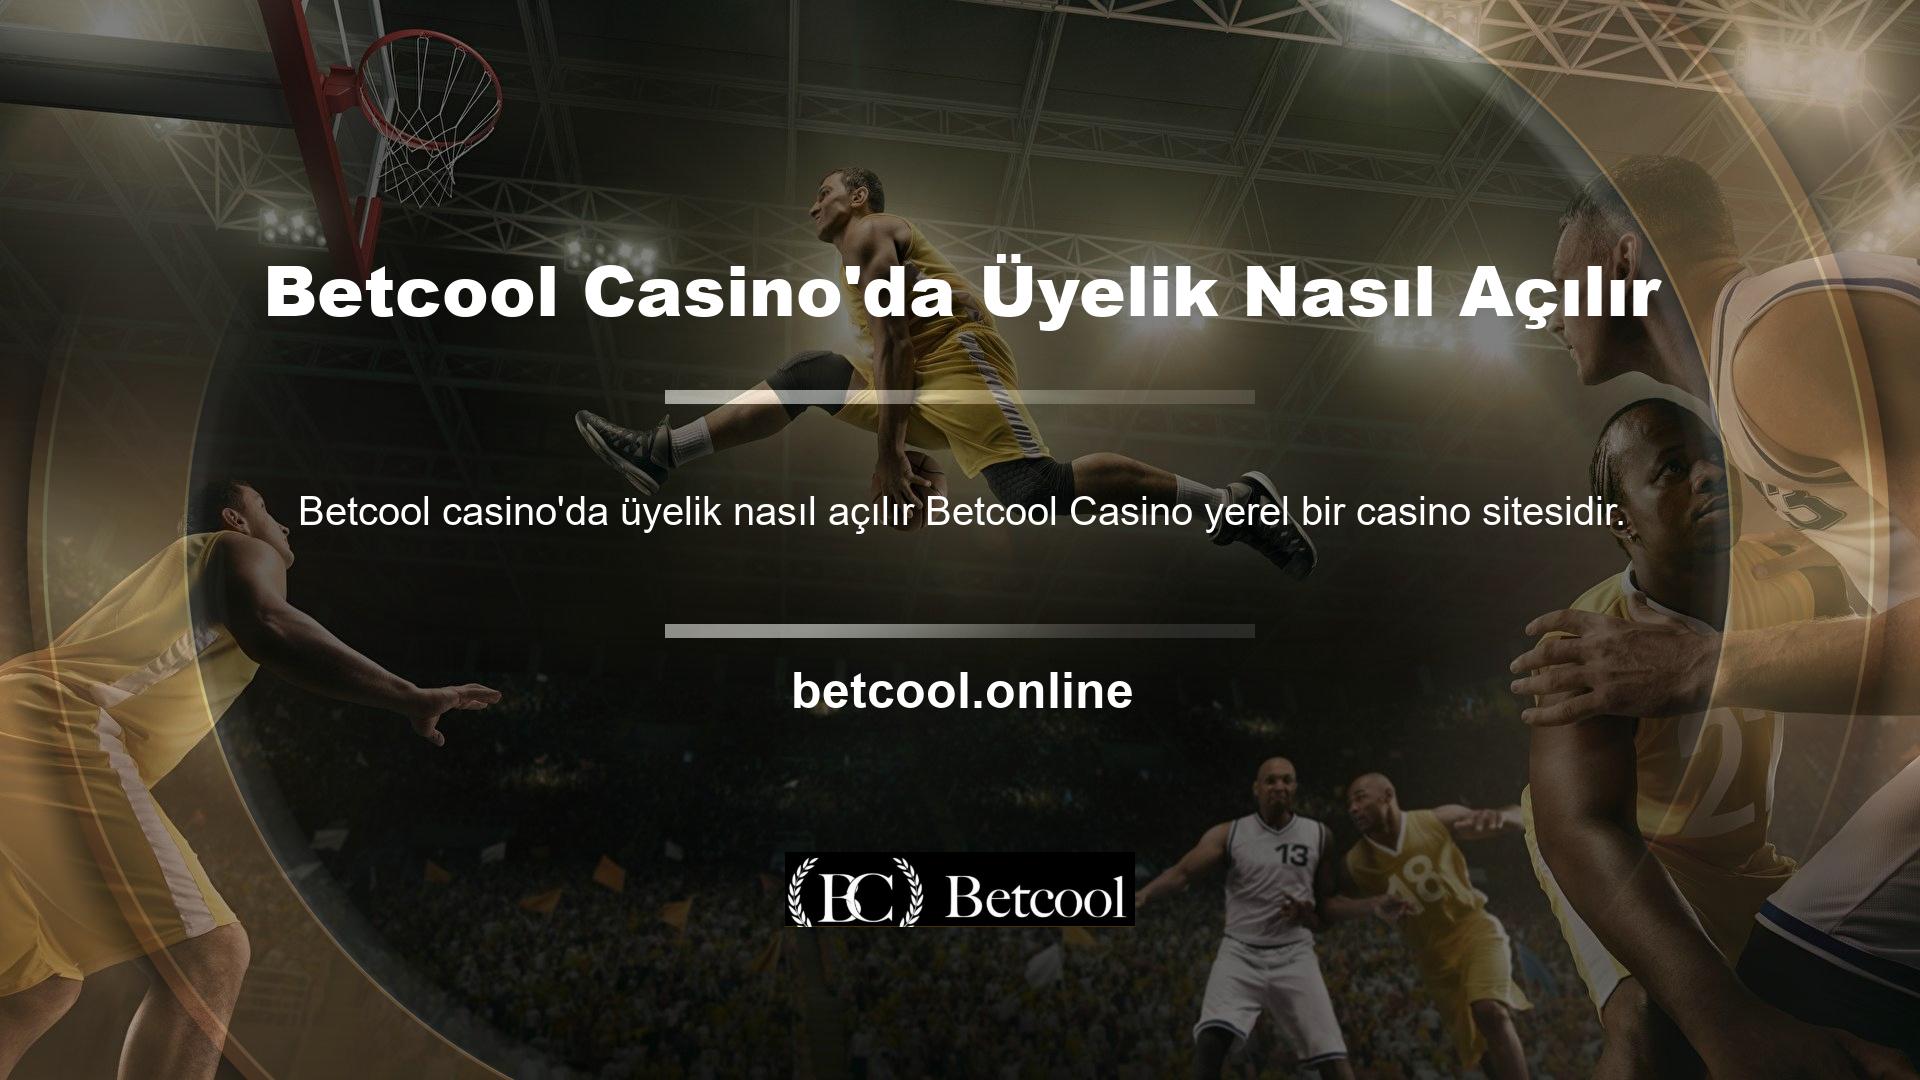 Yani Betcool Casino'nun Türkiye'de şubesini kurup, Kıbrıs'ta faaliyetlerimizi nasıl sürdürebiliriz? Yani Türkiye dostu ekibimiz ve Türk milli takımımız var